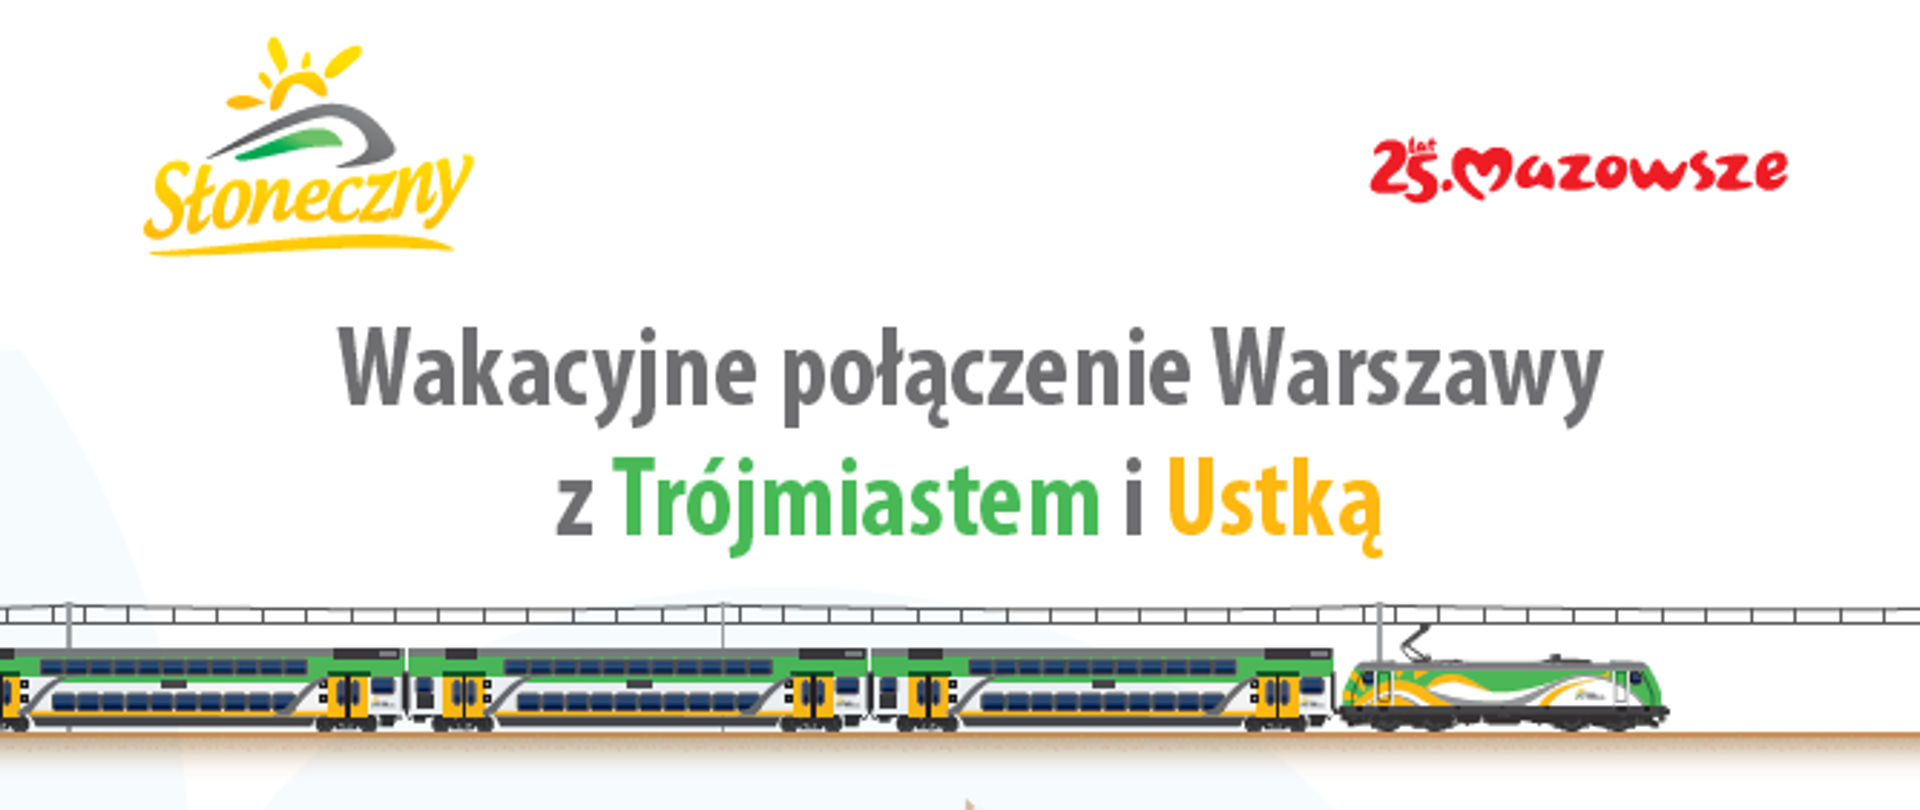 Plakat promujący pociąg "Słoneczny" do Ustki